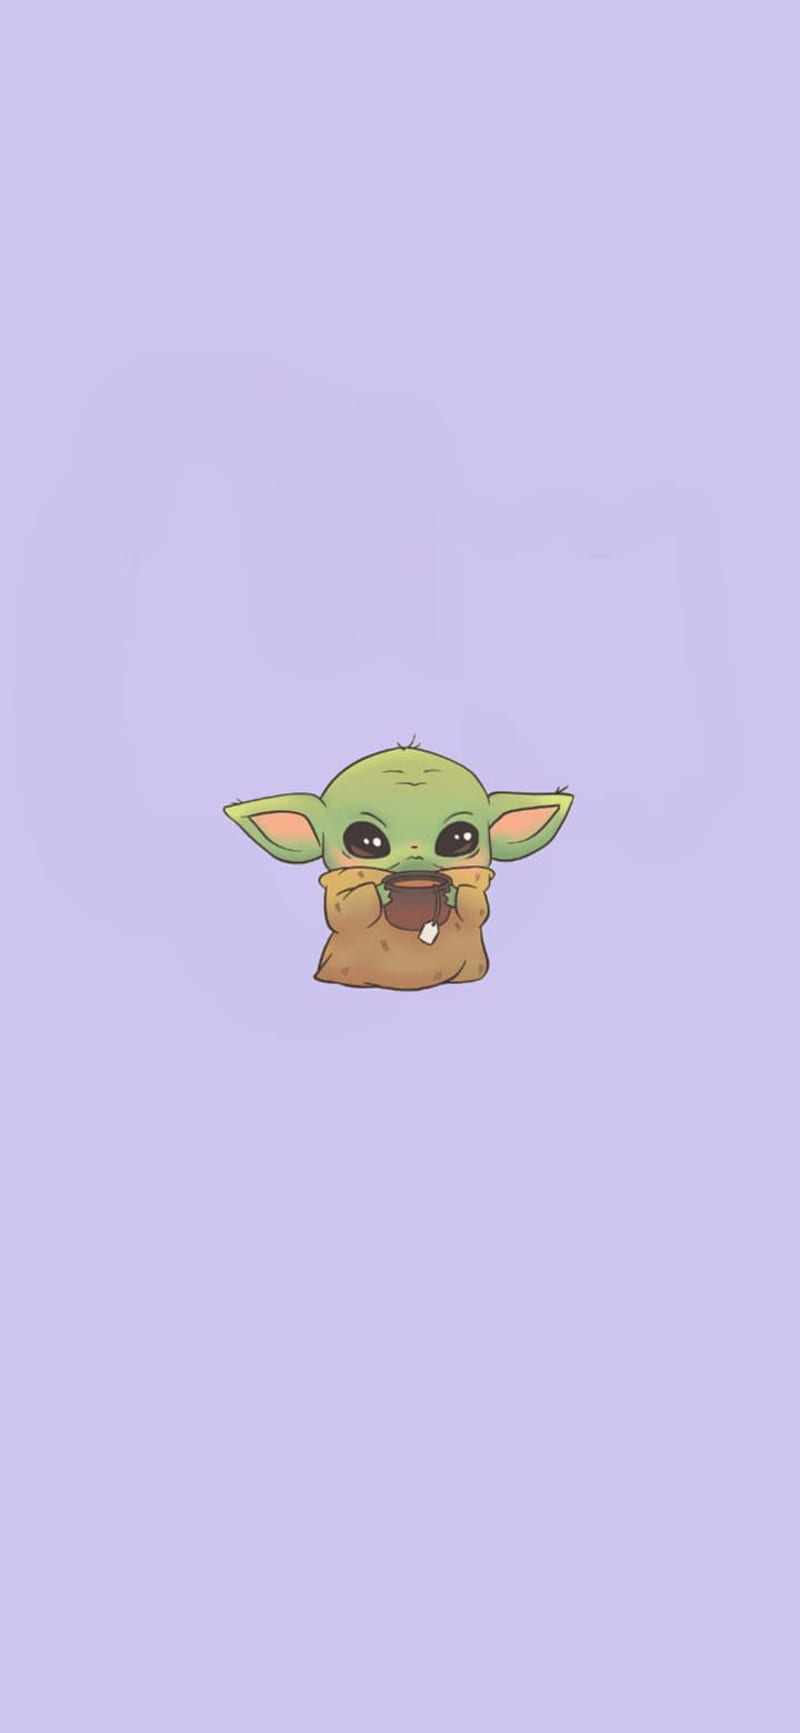 Với hình nền Baby Yoda đáng yêu này, bạn sẽ cảm thấy được sự ấm áp và thoải mái đúng như cách mà Baby Yoda đem đến. Hãy để ánh mắt đôi mắt to tròn của Baby Yoda giúp cho bạn tinh thần sảng khoái và đem lại thời gian tuyệt vời cho người dùng của chúng ta.